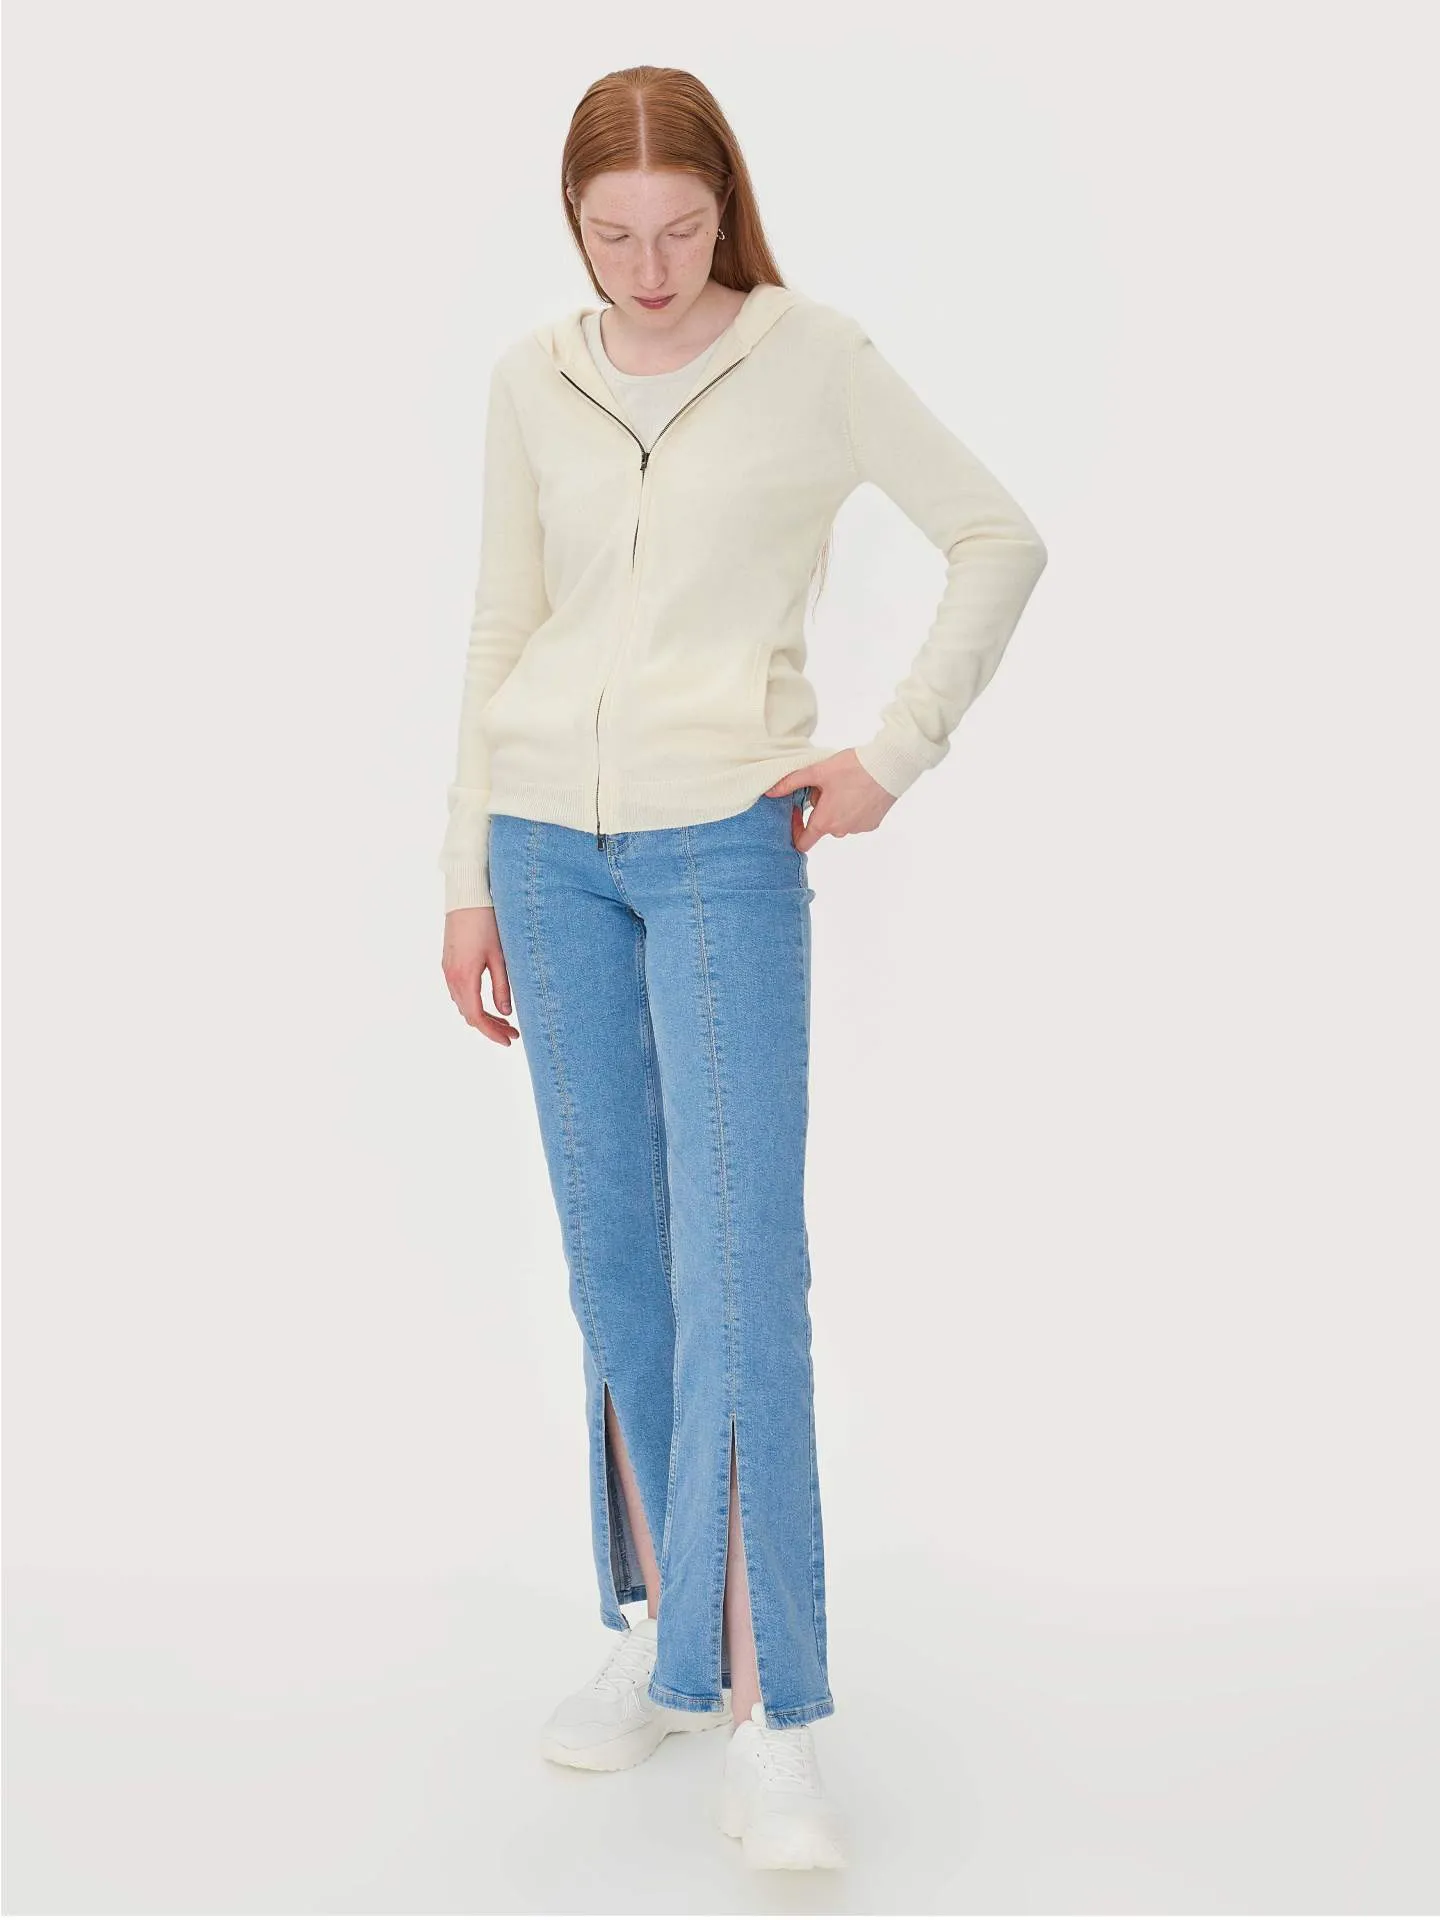 Women's Cashmere Full-Zip Hoodie White - Gobi Cashmere